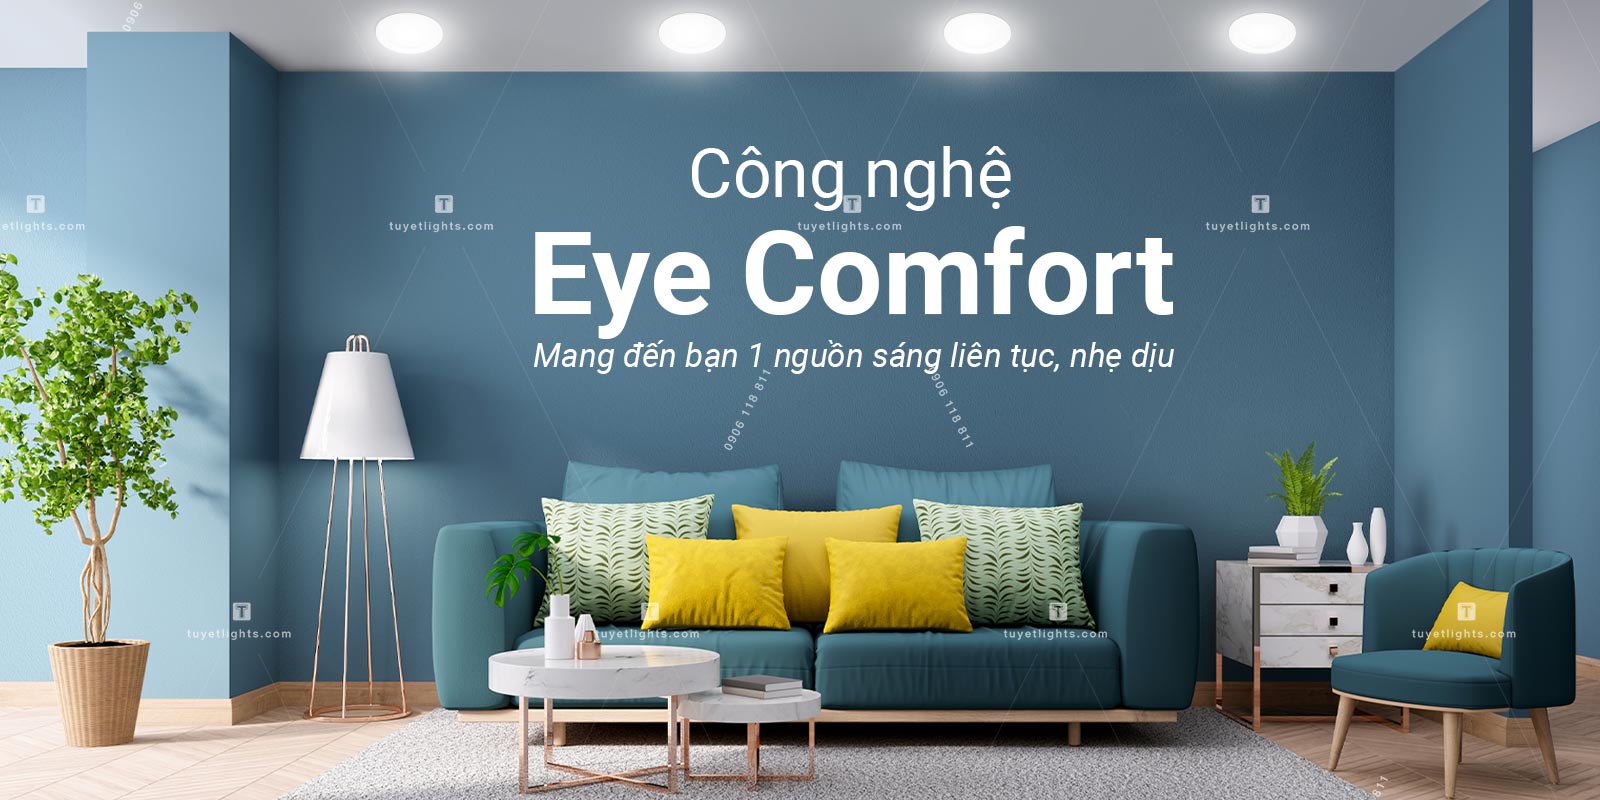 Công nghệ EyeComfort